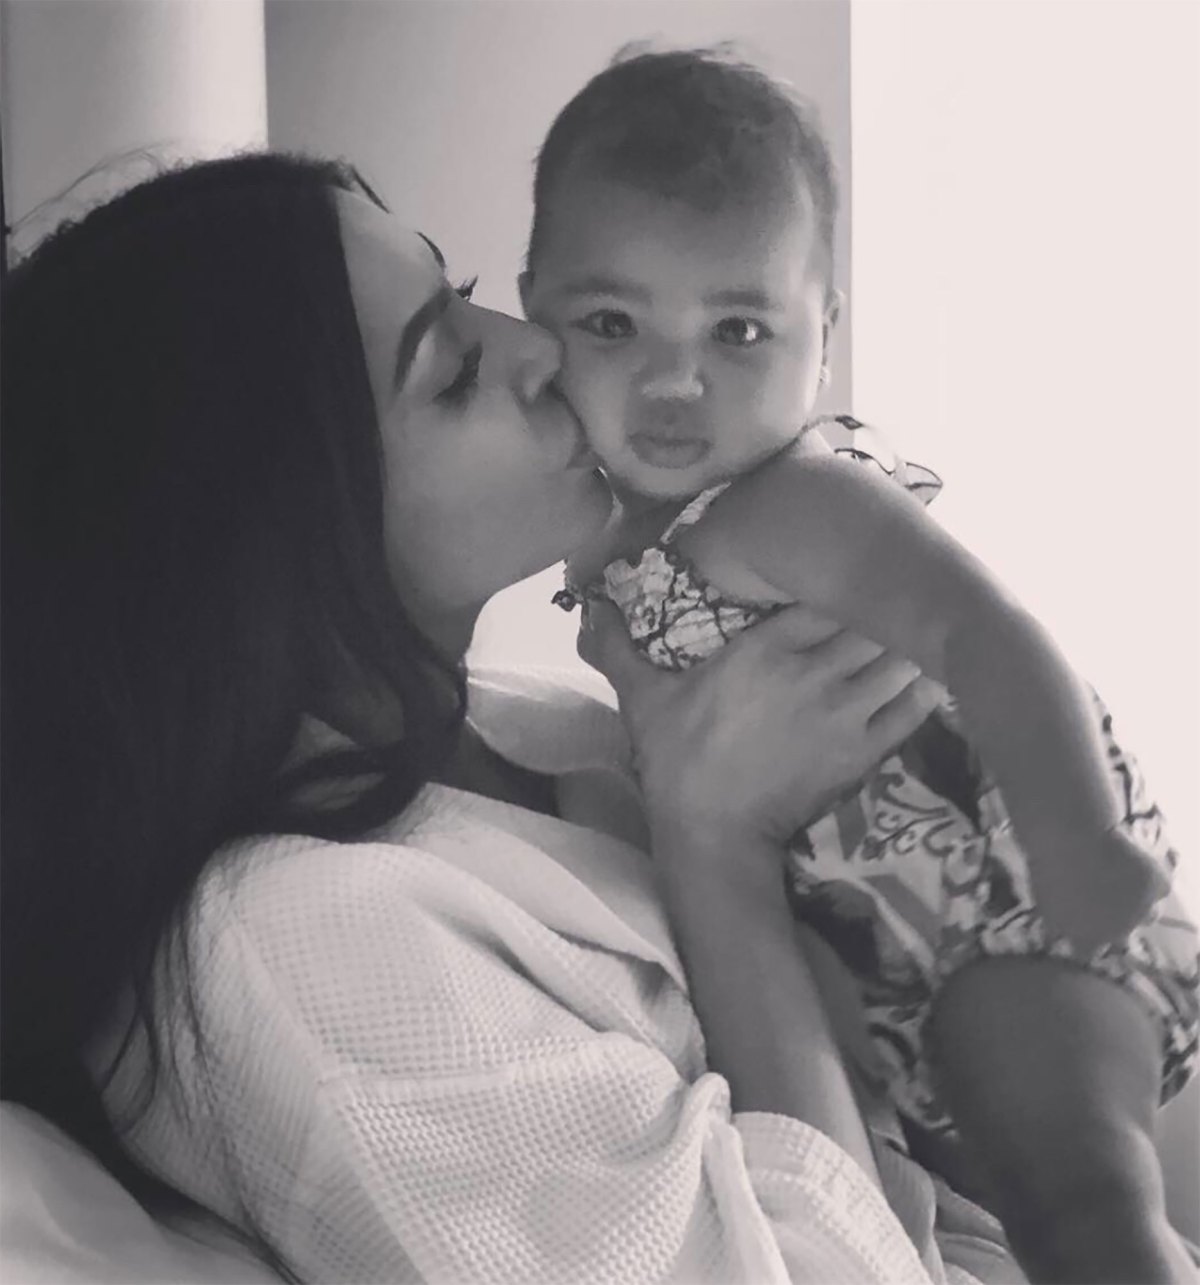 Khloe, Kardashian Family Shower True With Love on 1st Birthday